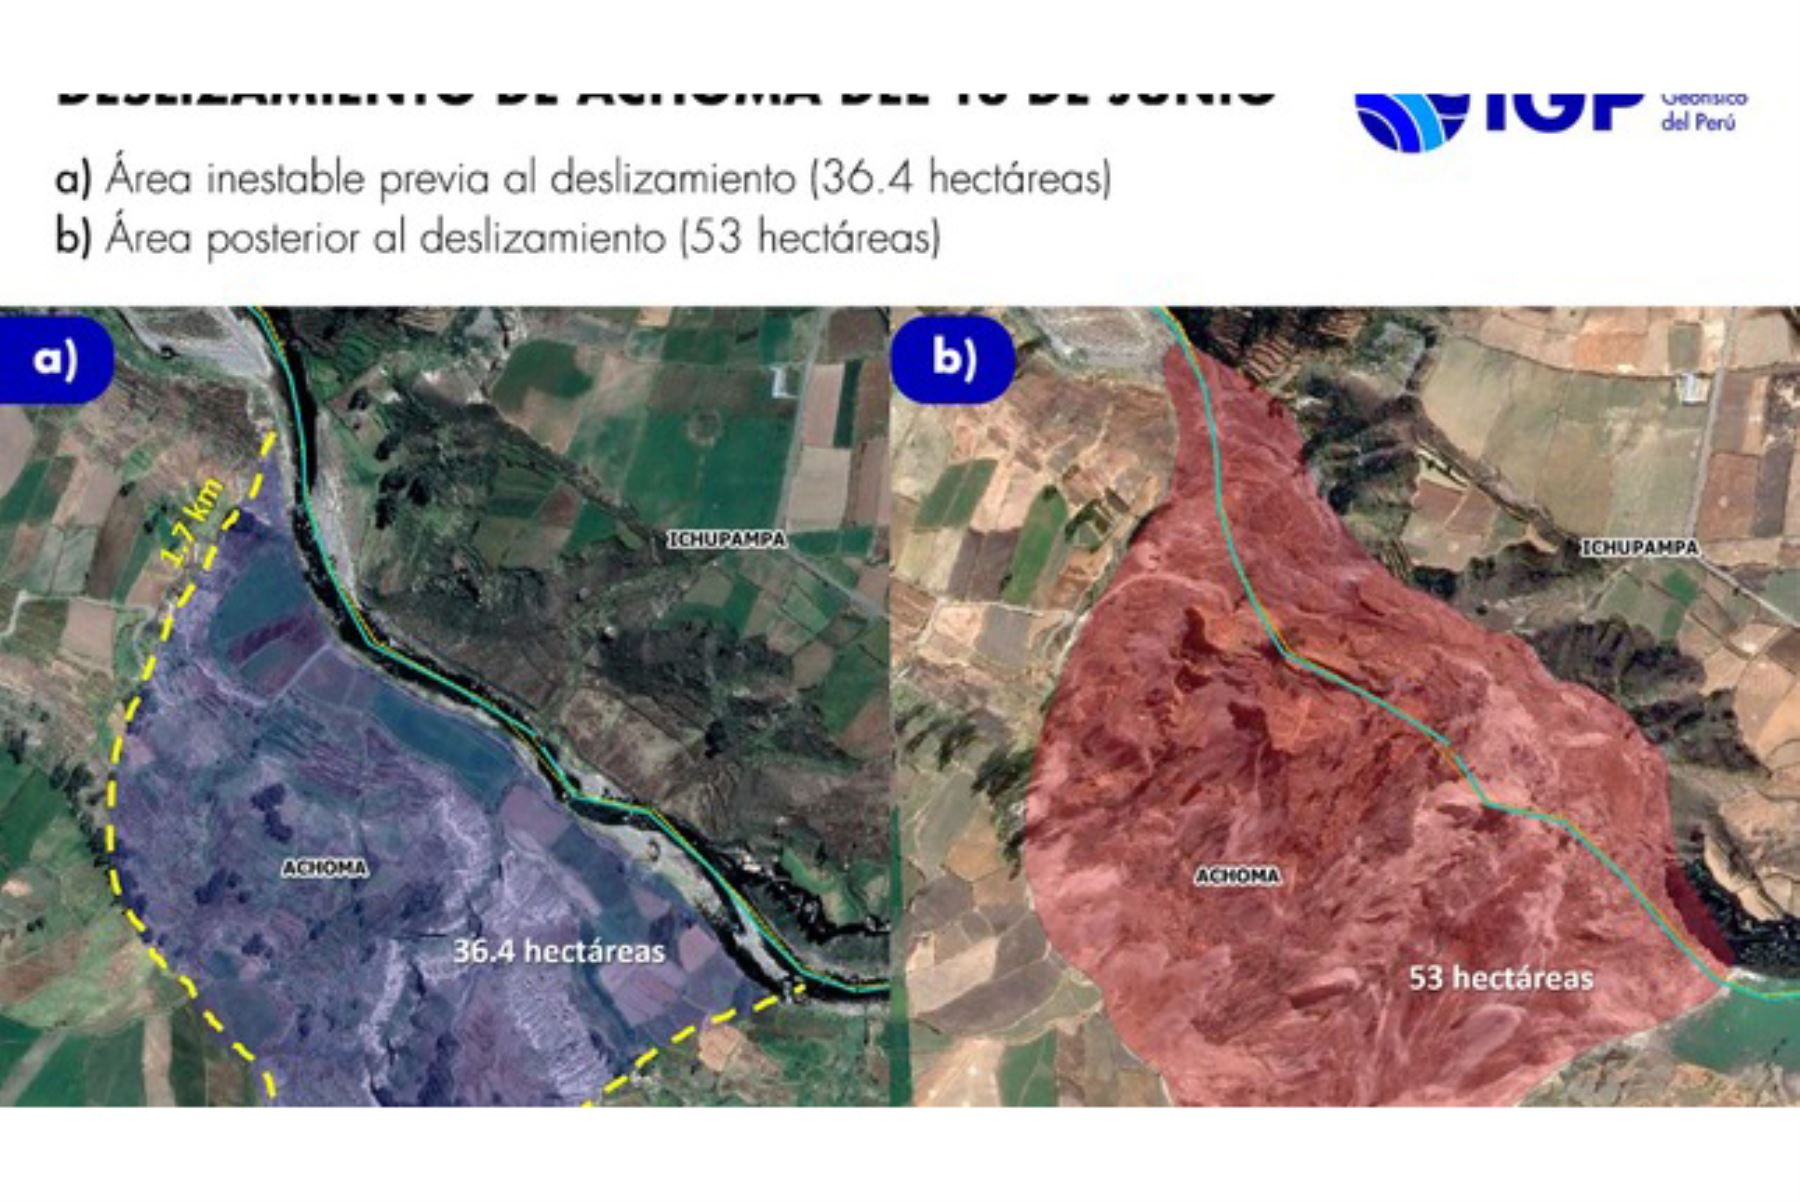 El IGP publicó el informe técnico “Evaluación geofísica del deslizamiento ocurrido el 18 de junio de 2020 en el distrito de Achoma”.